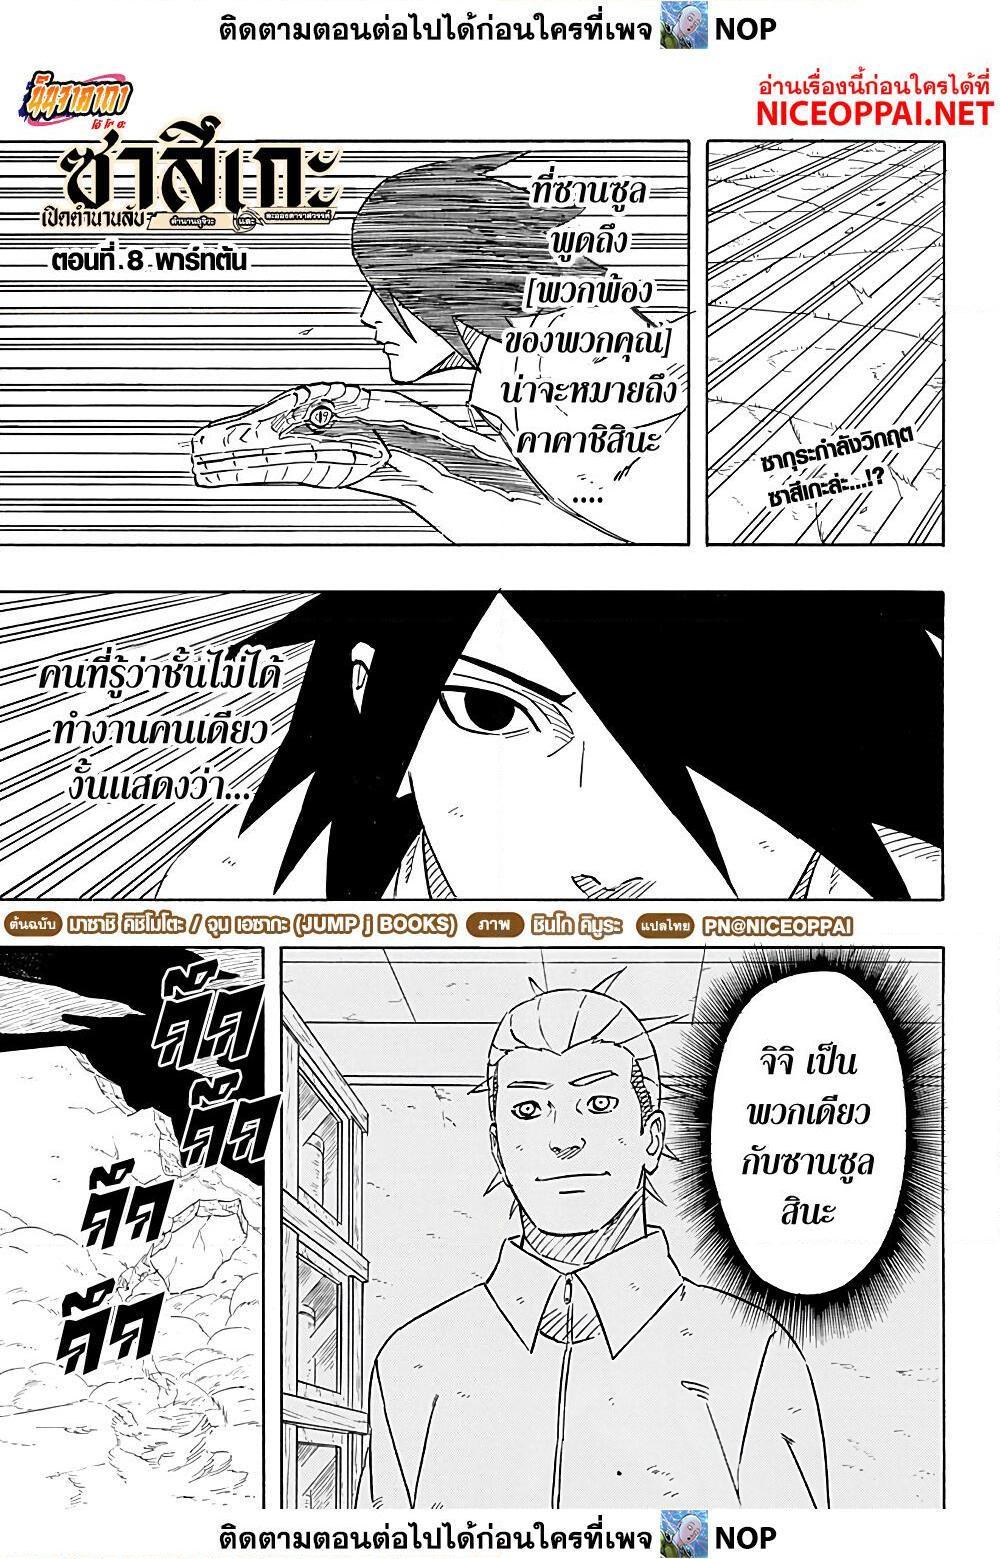 Naruto Sasuke’s Story 8.1 01